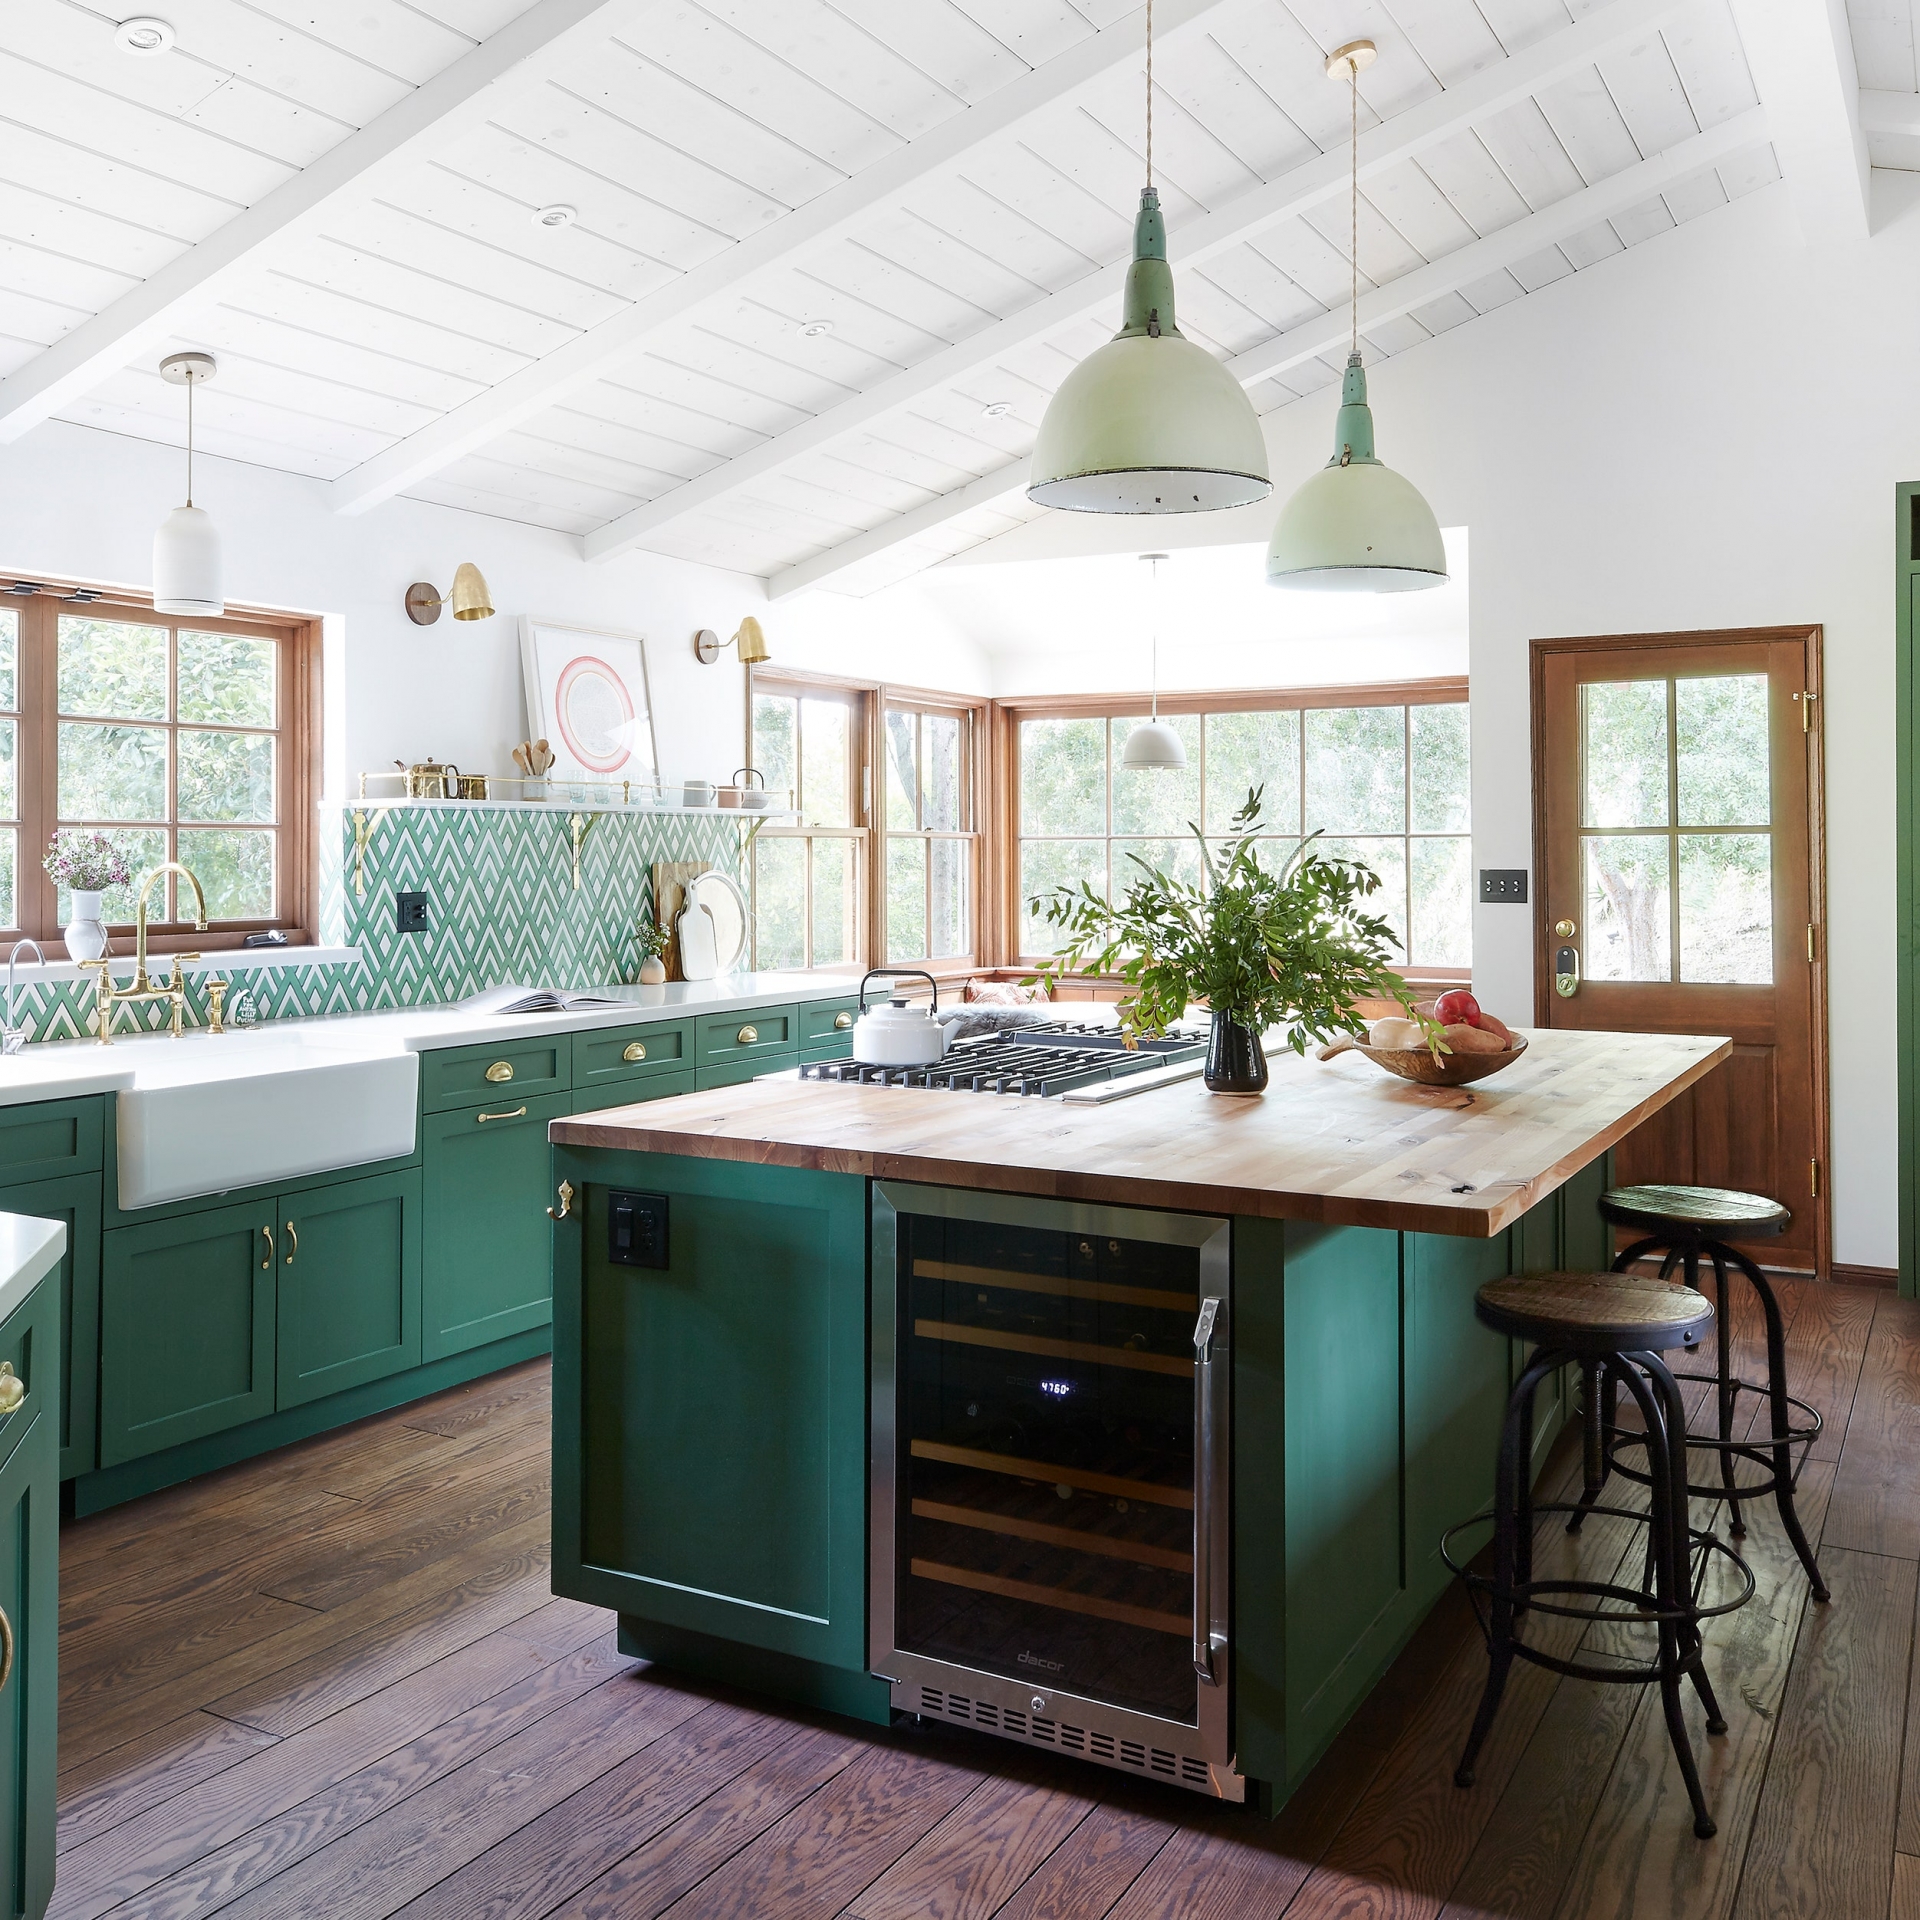 Phòng bếp sử dụng gam màu xanh ngọc lục bảo để sơn tủ lưu trữ và đảo bếp. Vẻ đẹp sang trọng của gam màu này kết hợp với màu nâu tự nhiên của gỗ cùng những ô cửa sổ đầy nắng cho vẻ đẹp vừa sang trọng vừa ấm áp.